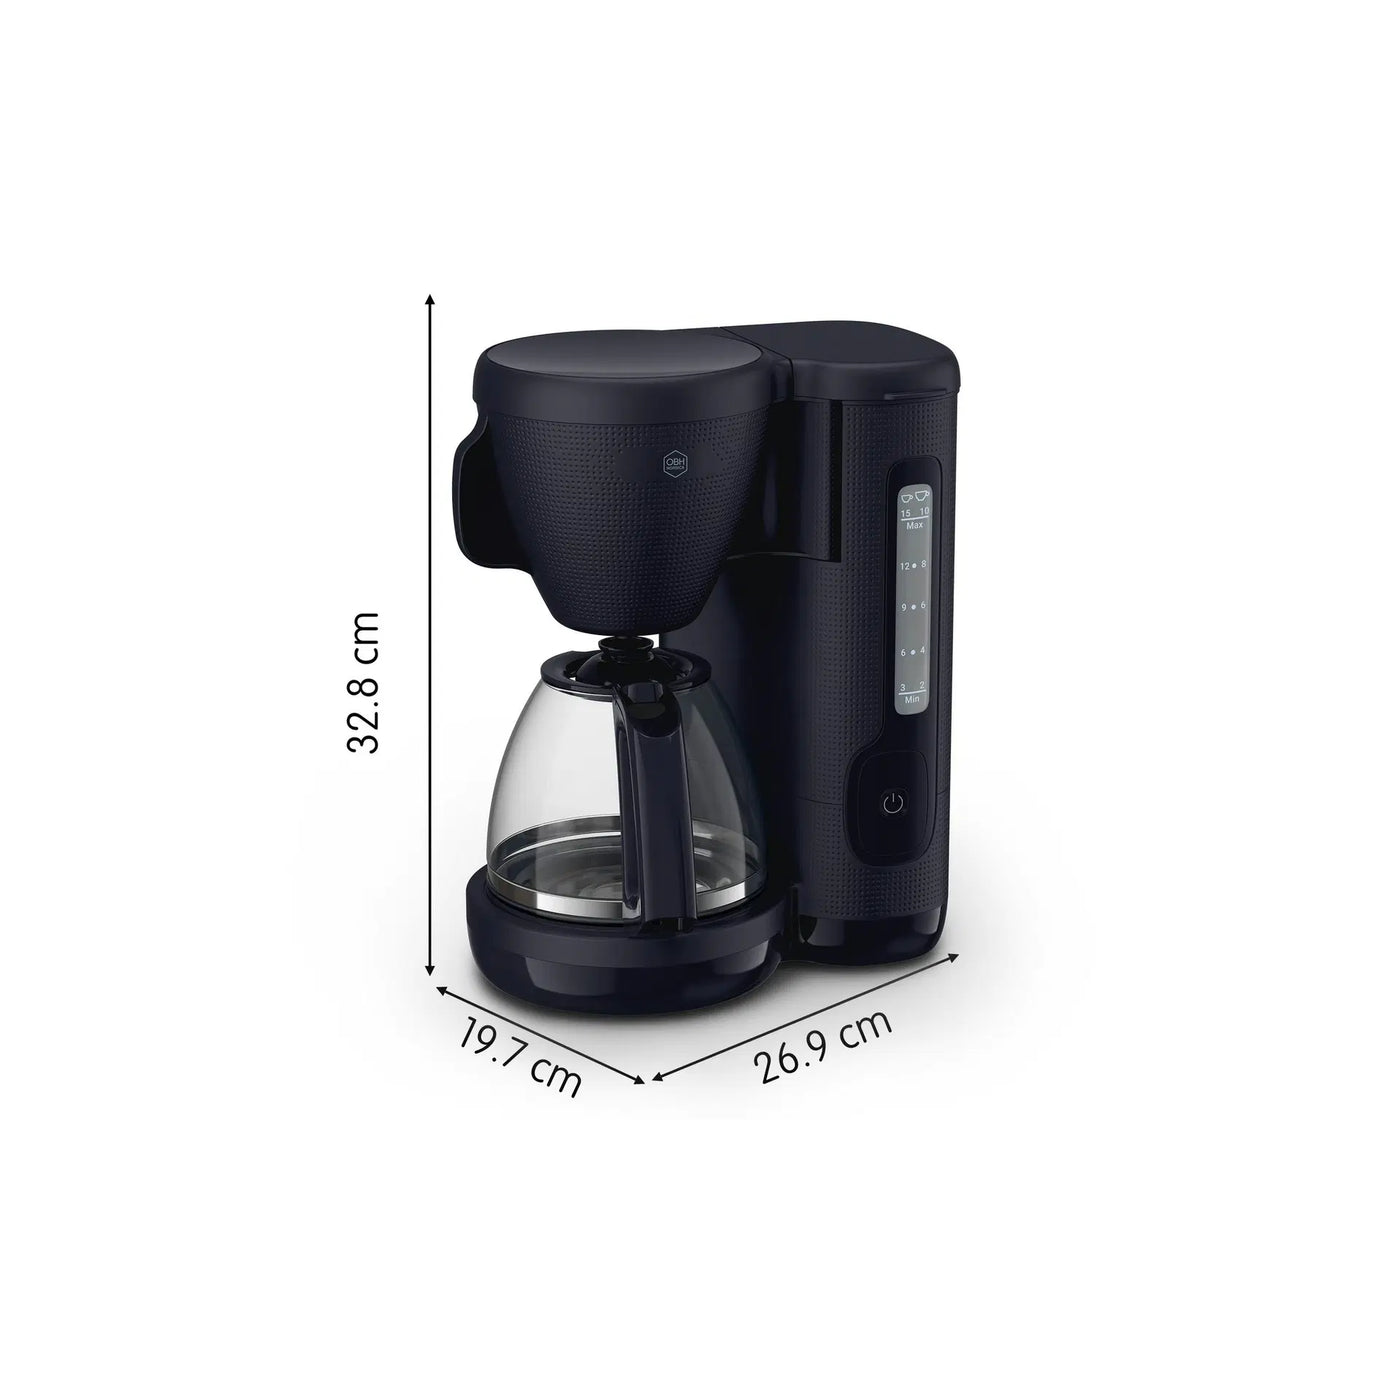 OBH Nordica - kaffemaskine Morning OP2M08S0 - Sort